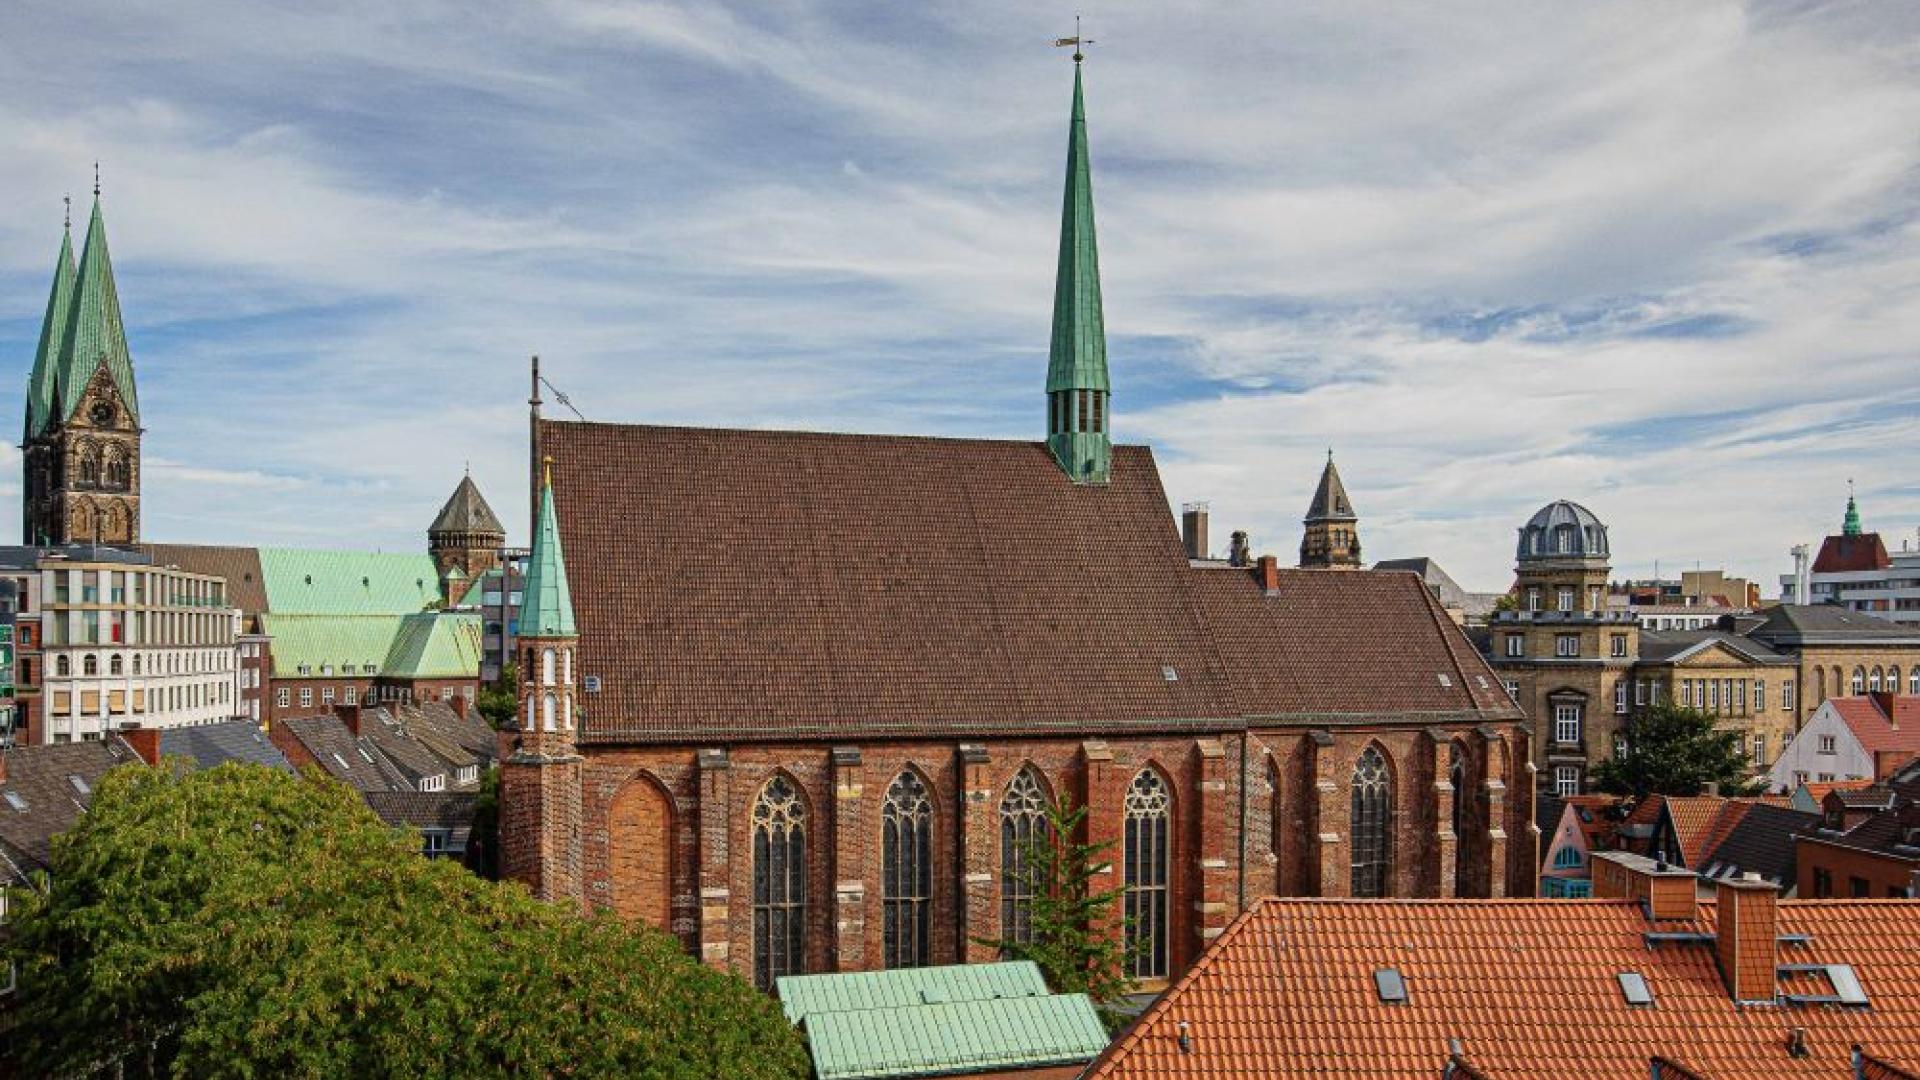 Propsteikirche St. Johann in Bremen von oben